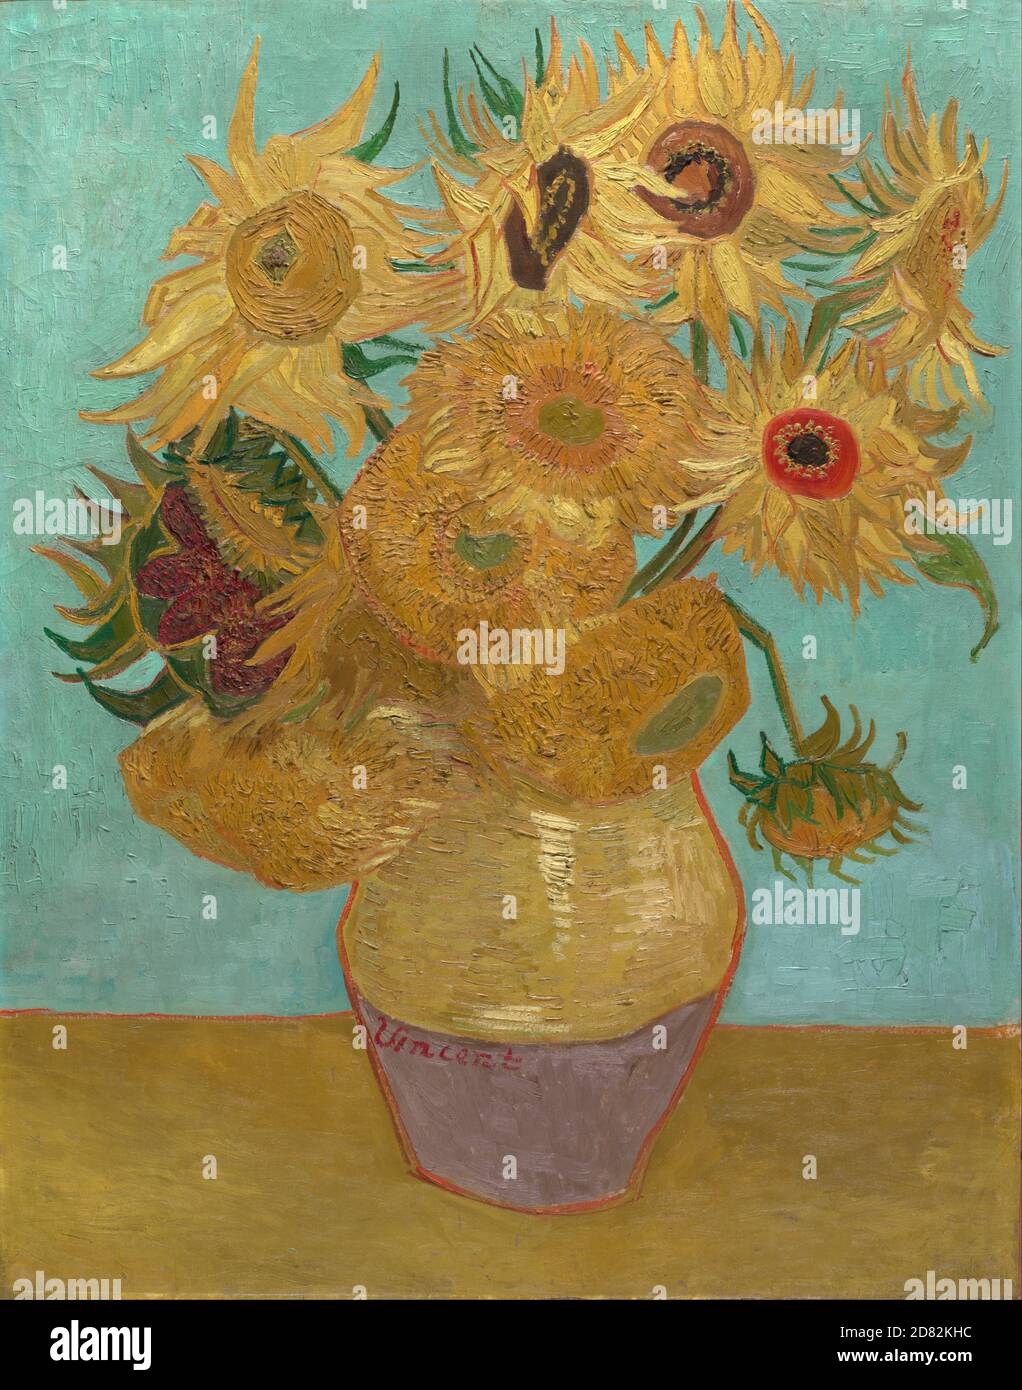 Titre: Tournesol Créateur: Vincent van Gogh Date: 1888 Moyen: Huile sur toile Dimensions: 91 x 72 cm emplacement: Neue Pinakothek, Munich, Allemagne Banque D'Images